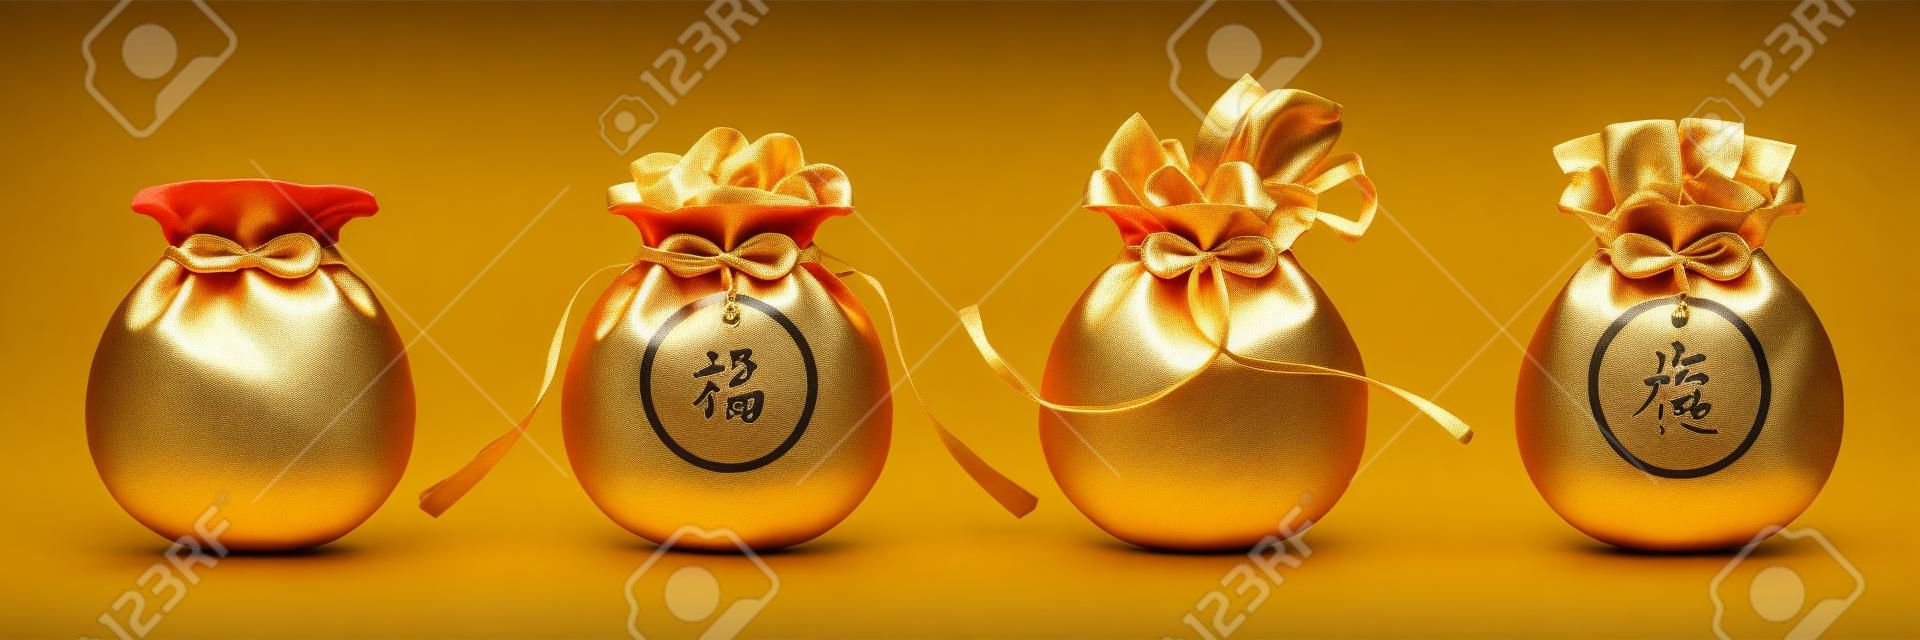 Torba ze wstążką lub worek z frędzlami, woreczek ze złotą sztabką, saszetka z pieniędzmi lub hangbao, woreczek z chińskim hieroglifem czyli Szczęście lub Szczęście. 2020 CNY lub chiński nowy rok wakacje